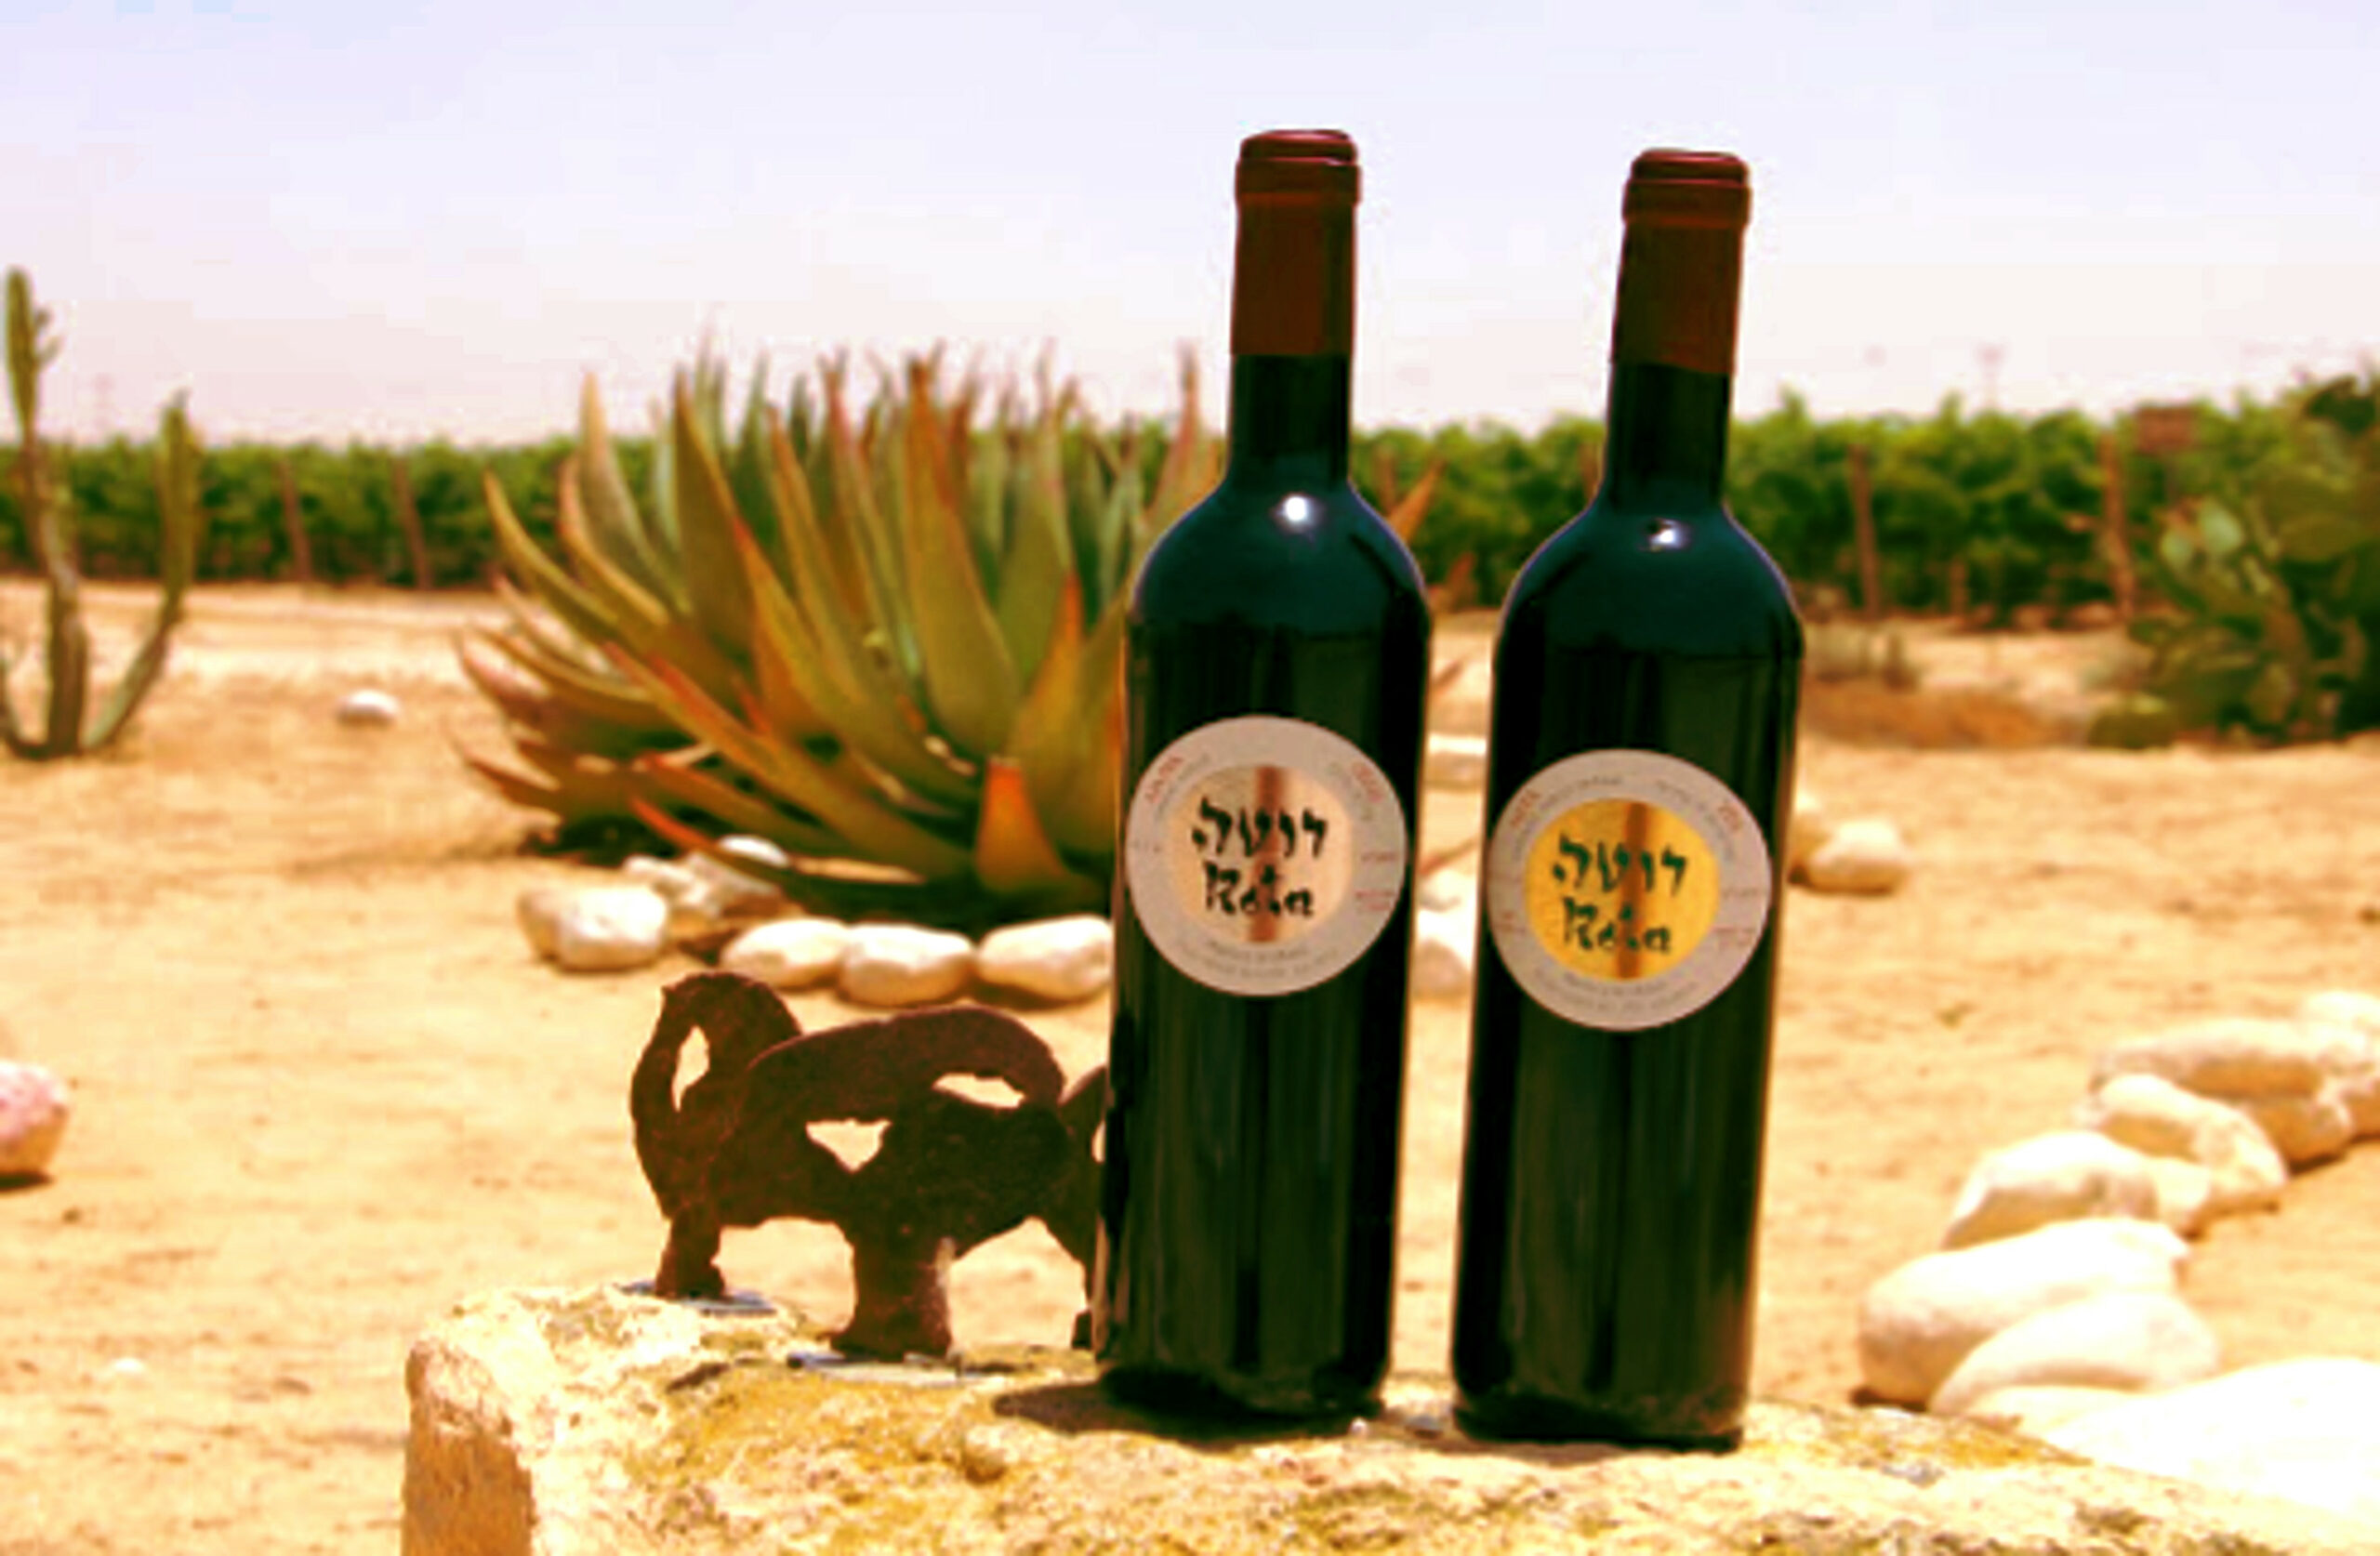 Dos botellas de vino cultivado localmente en el desierto de Israel